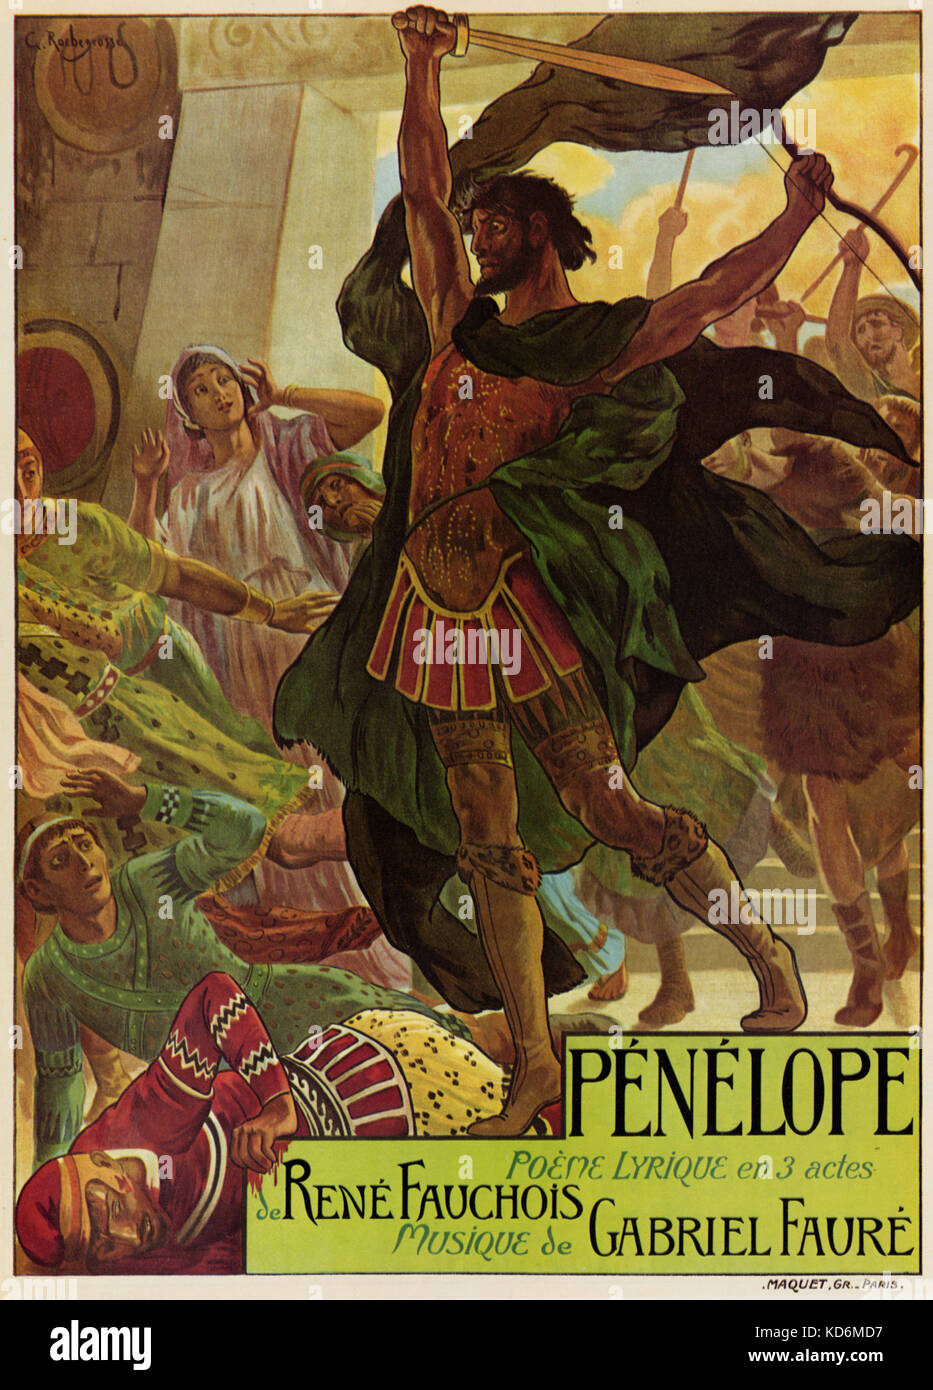 Gabriel Fauré 's opera "Penelope" - compositore francese, 12 maggio 1845 - 4 novembre 1924. Poster per la premiere di Monte Carlo il 4 marzo, 1913. Poster da Georges Rochegrosse Foto Stock